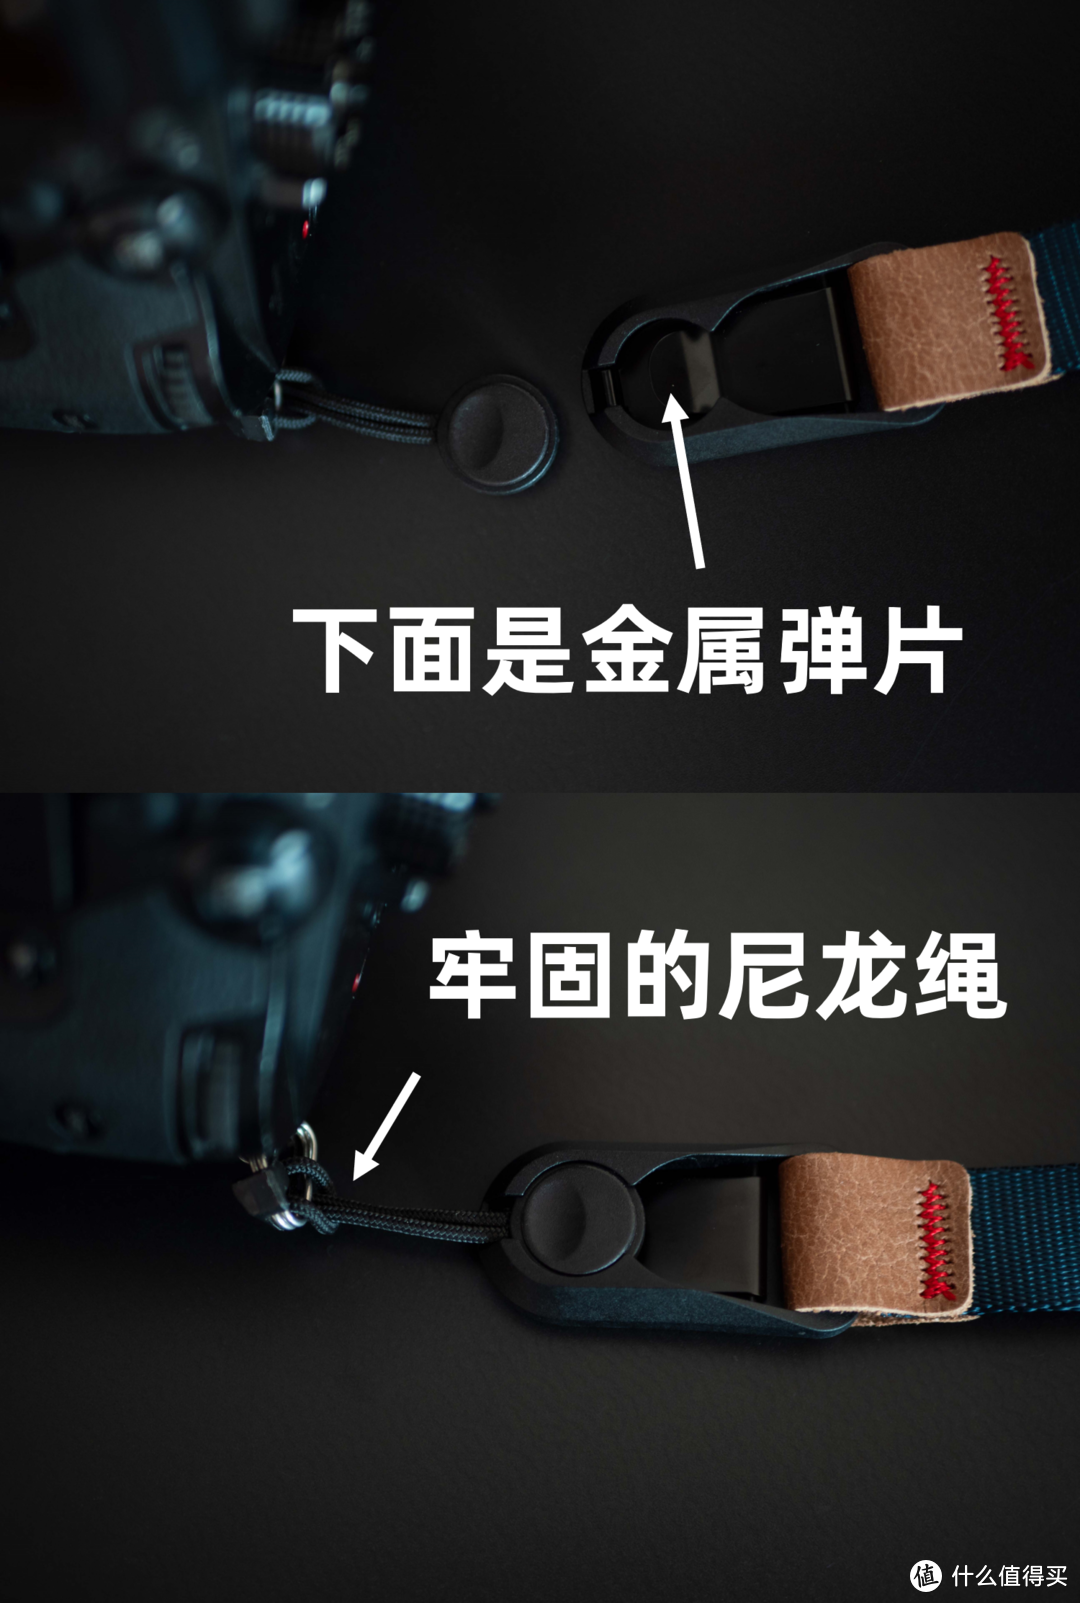 便宜的国产相机快拆腕带、背带怎么样？安全性和功能性都不落下，性价比之选就是他了